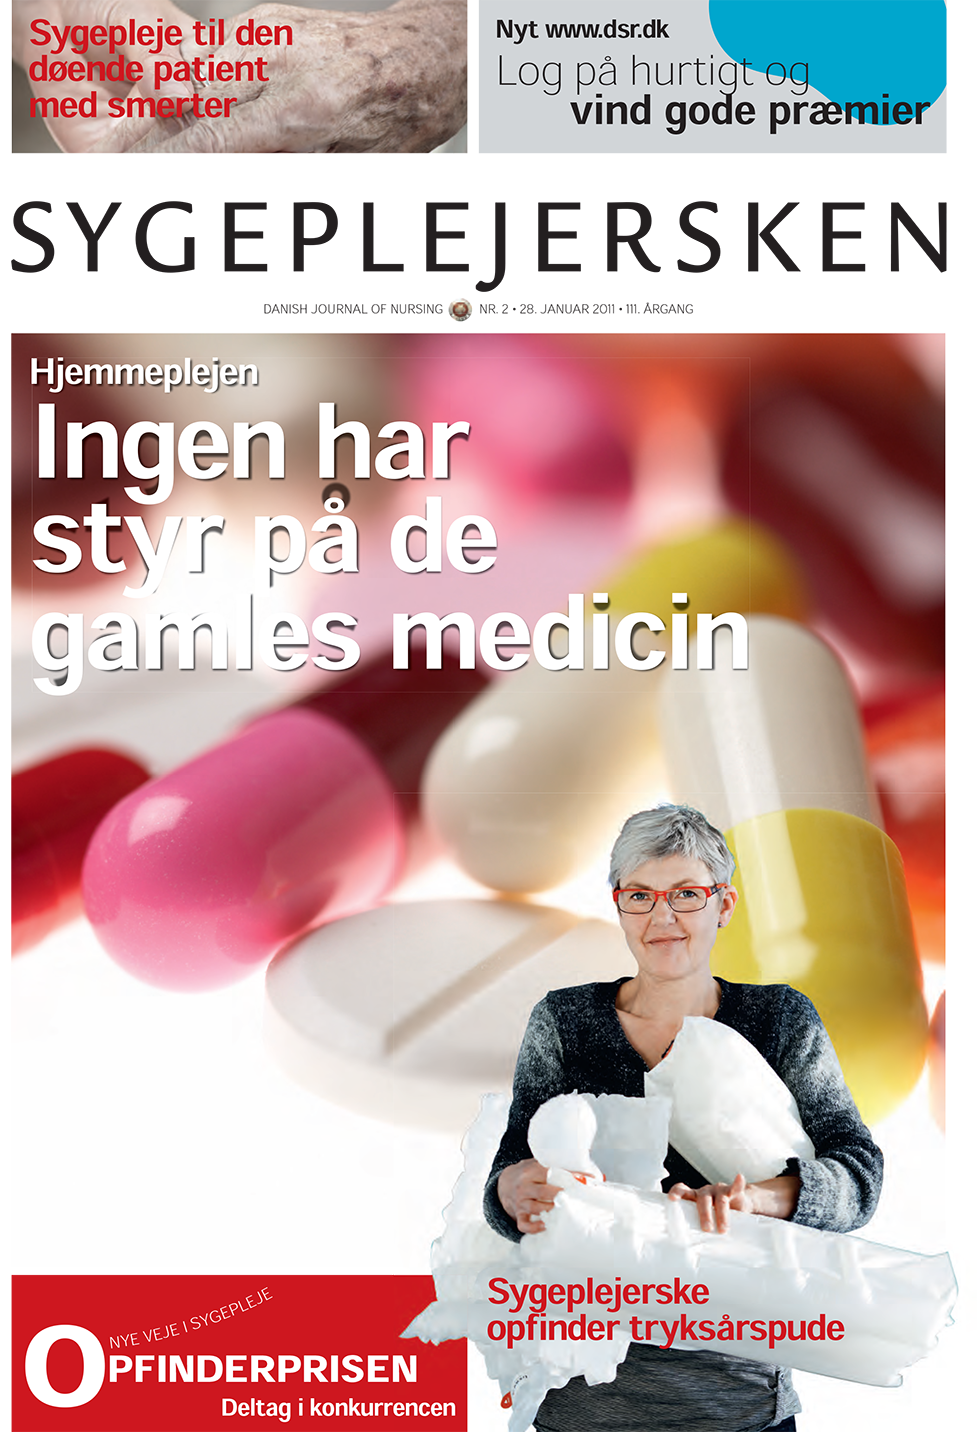 Sygeplejersken_2011_02 - magasinforsiden